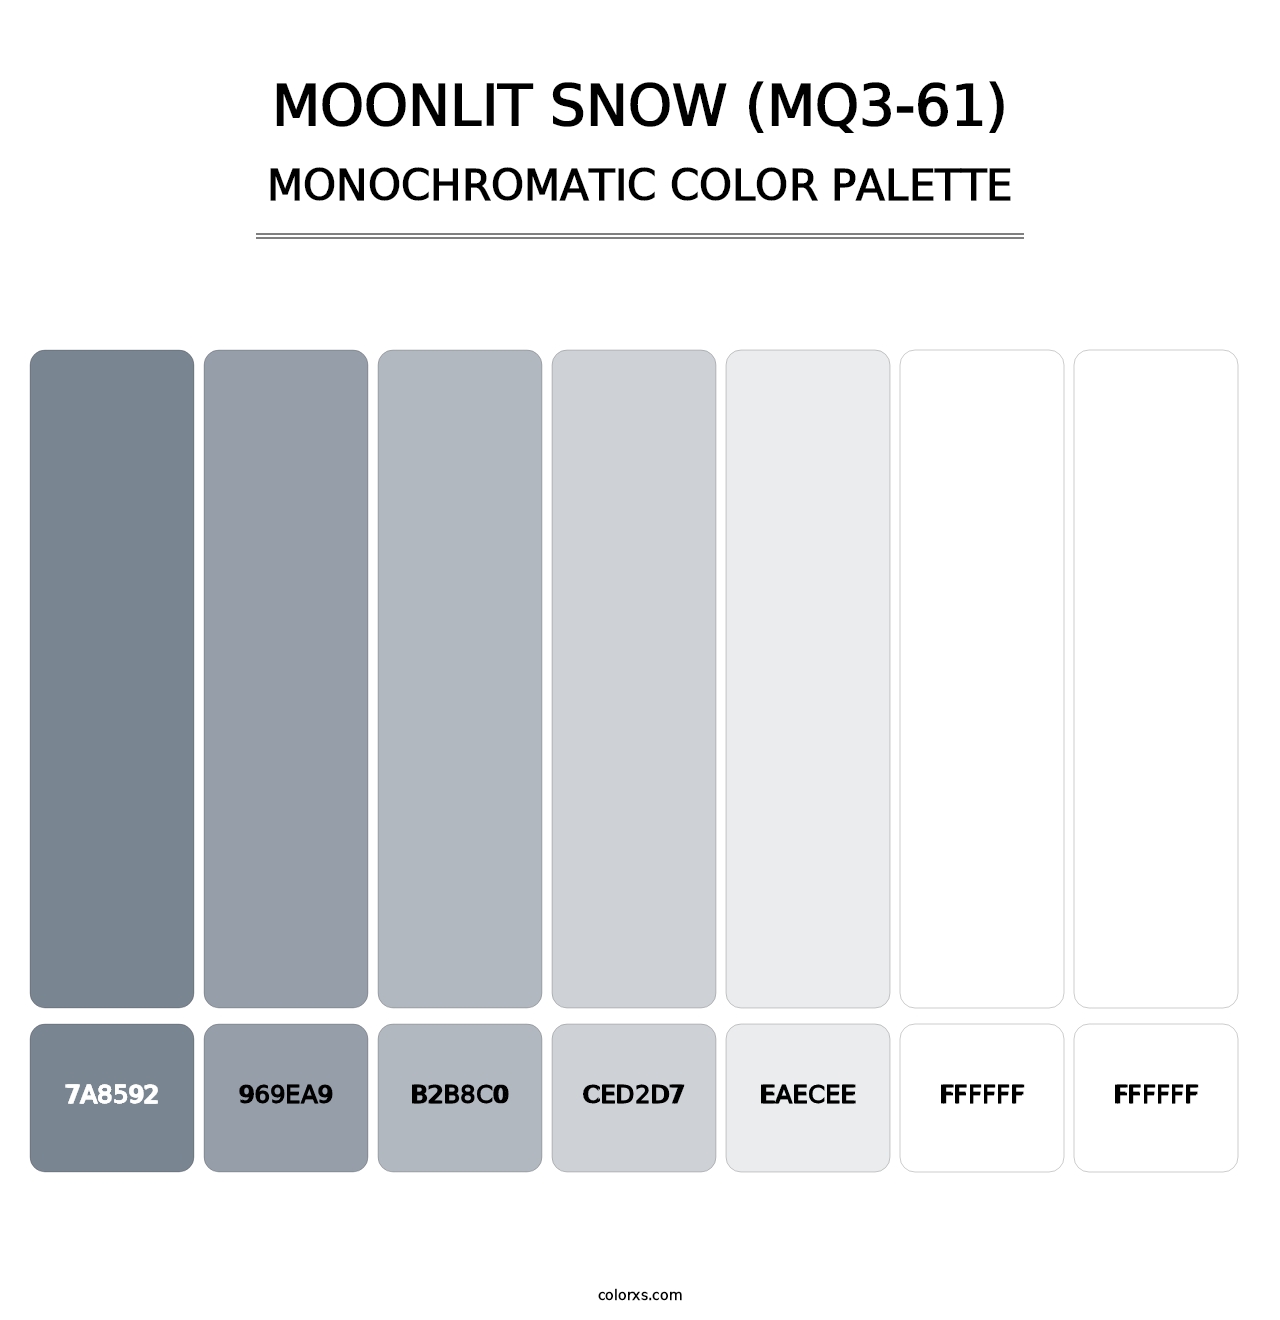 Moonlit Snow (MQ3-61) - Monochromatic Color Palette